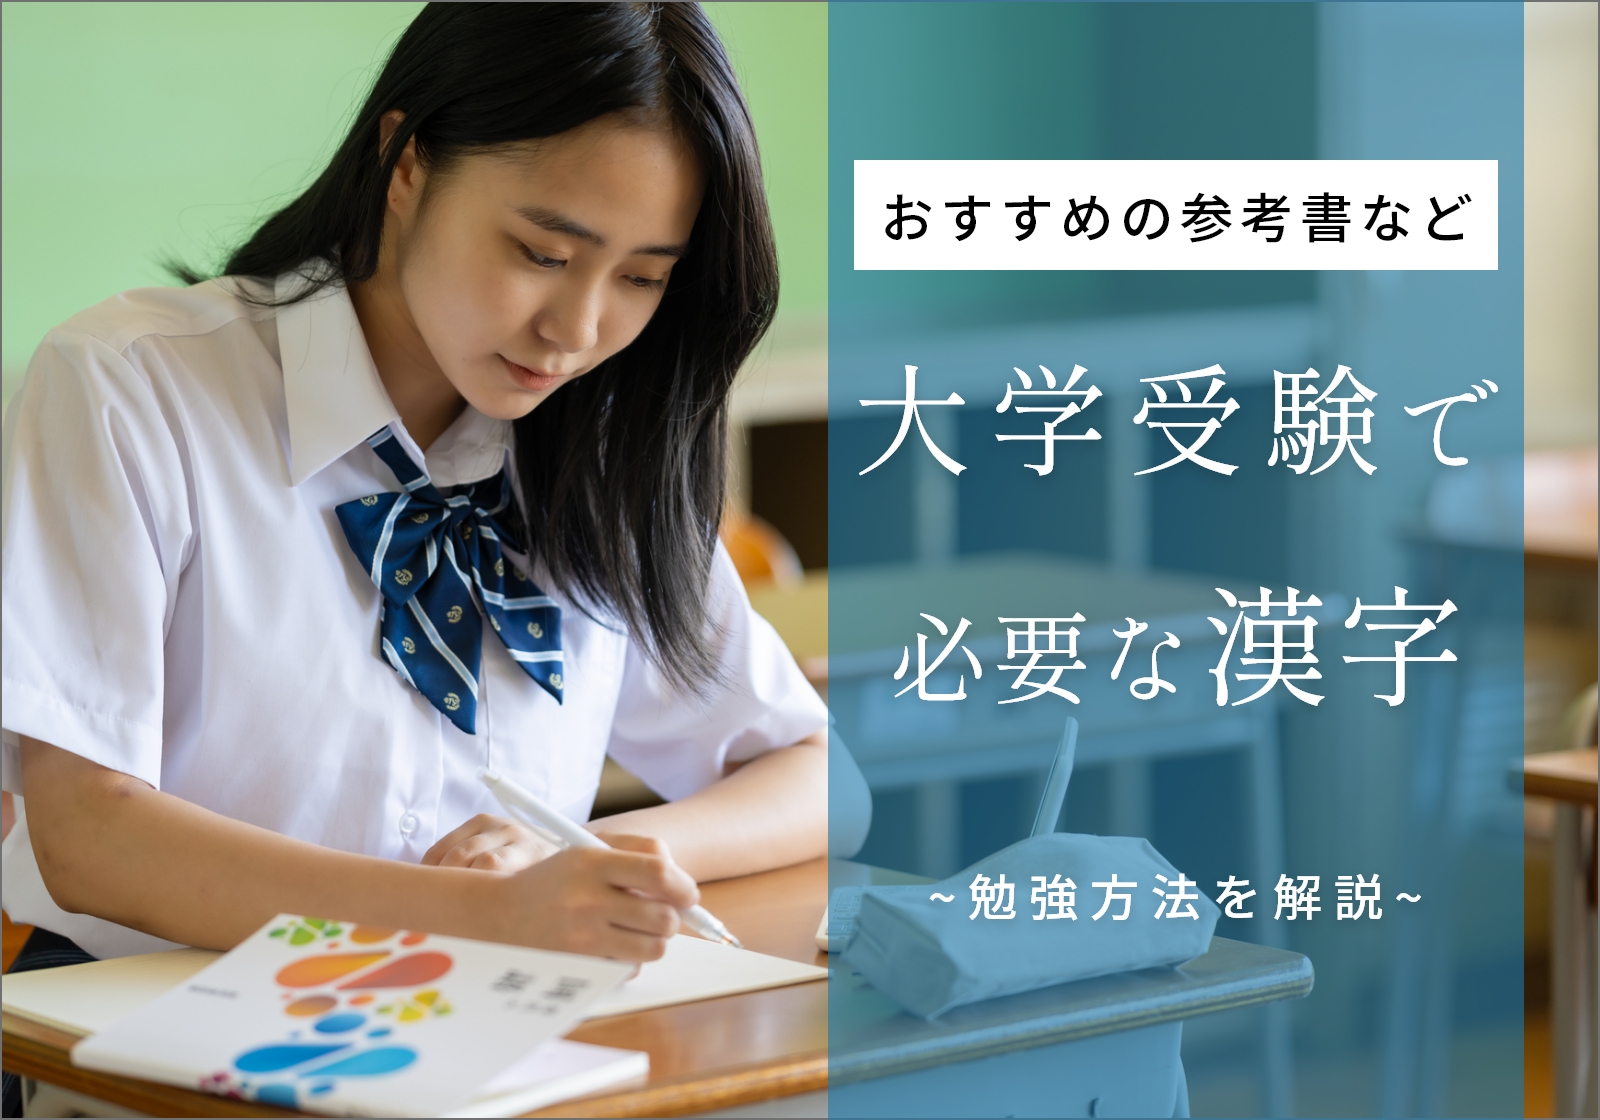 「大学受験で漢字の勉強は重要！勉強法やおすすめの参考書・問題集を紹介」サムネイル画像